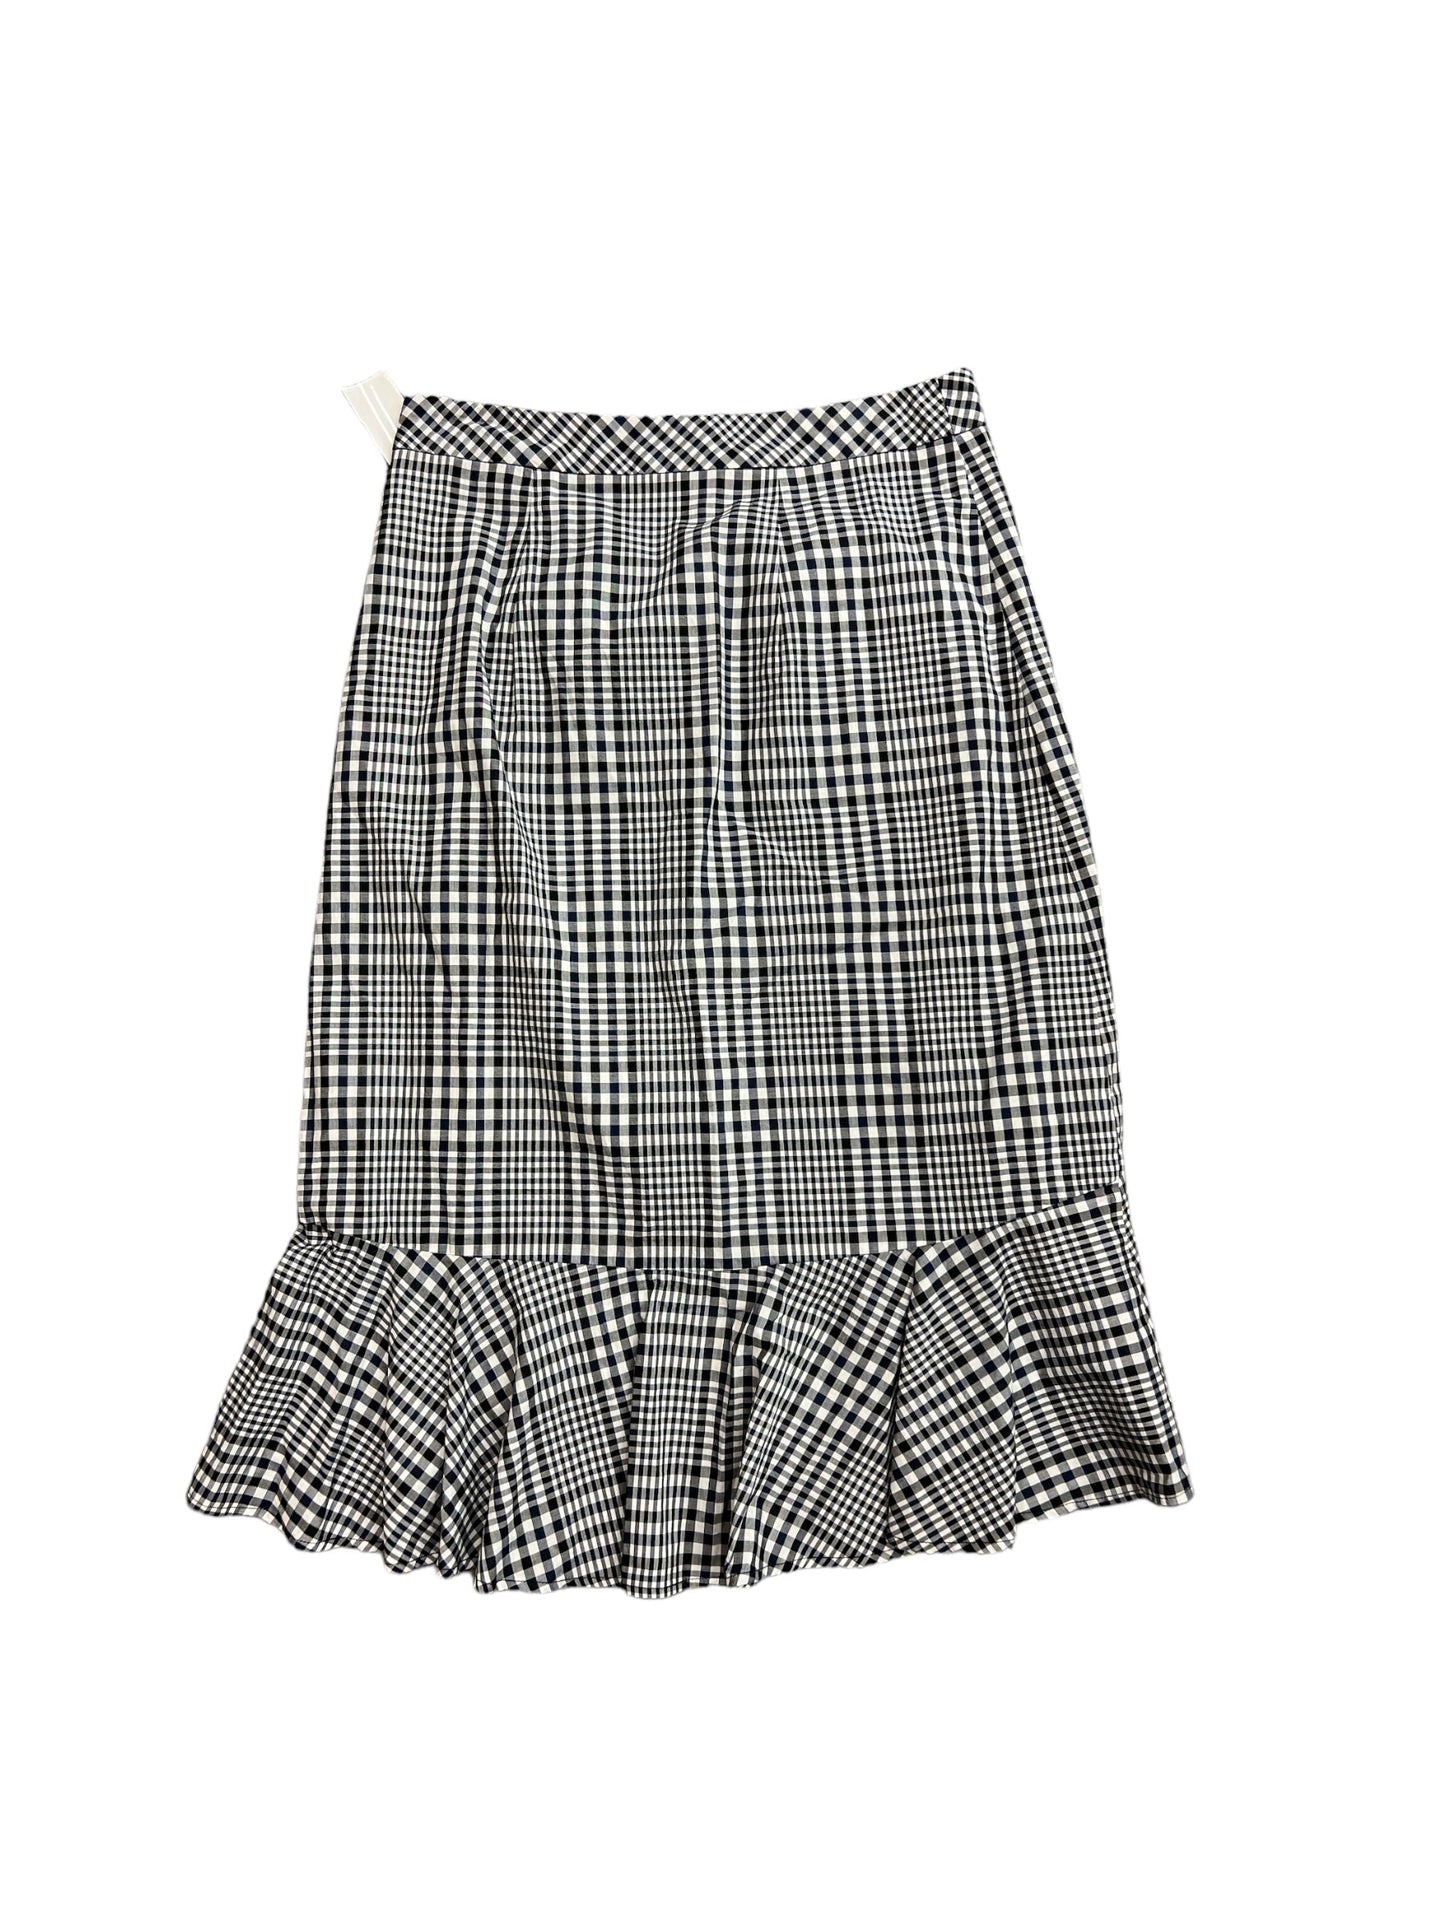 Skirt Designer By Trina Turk  Size: 4